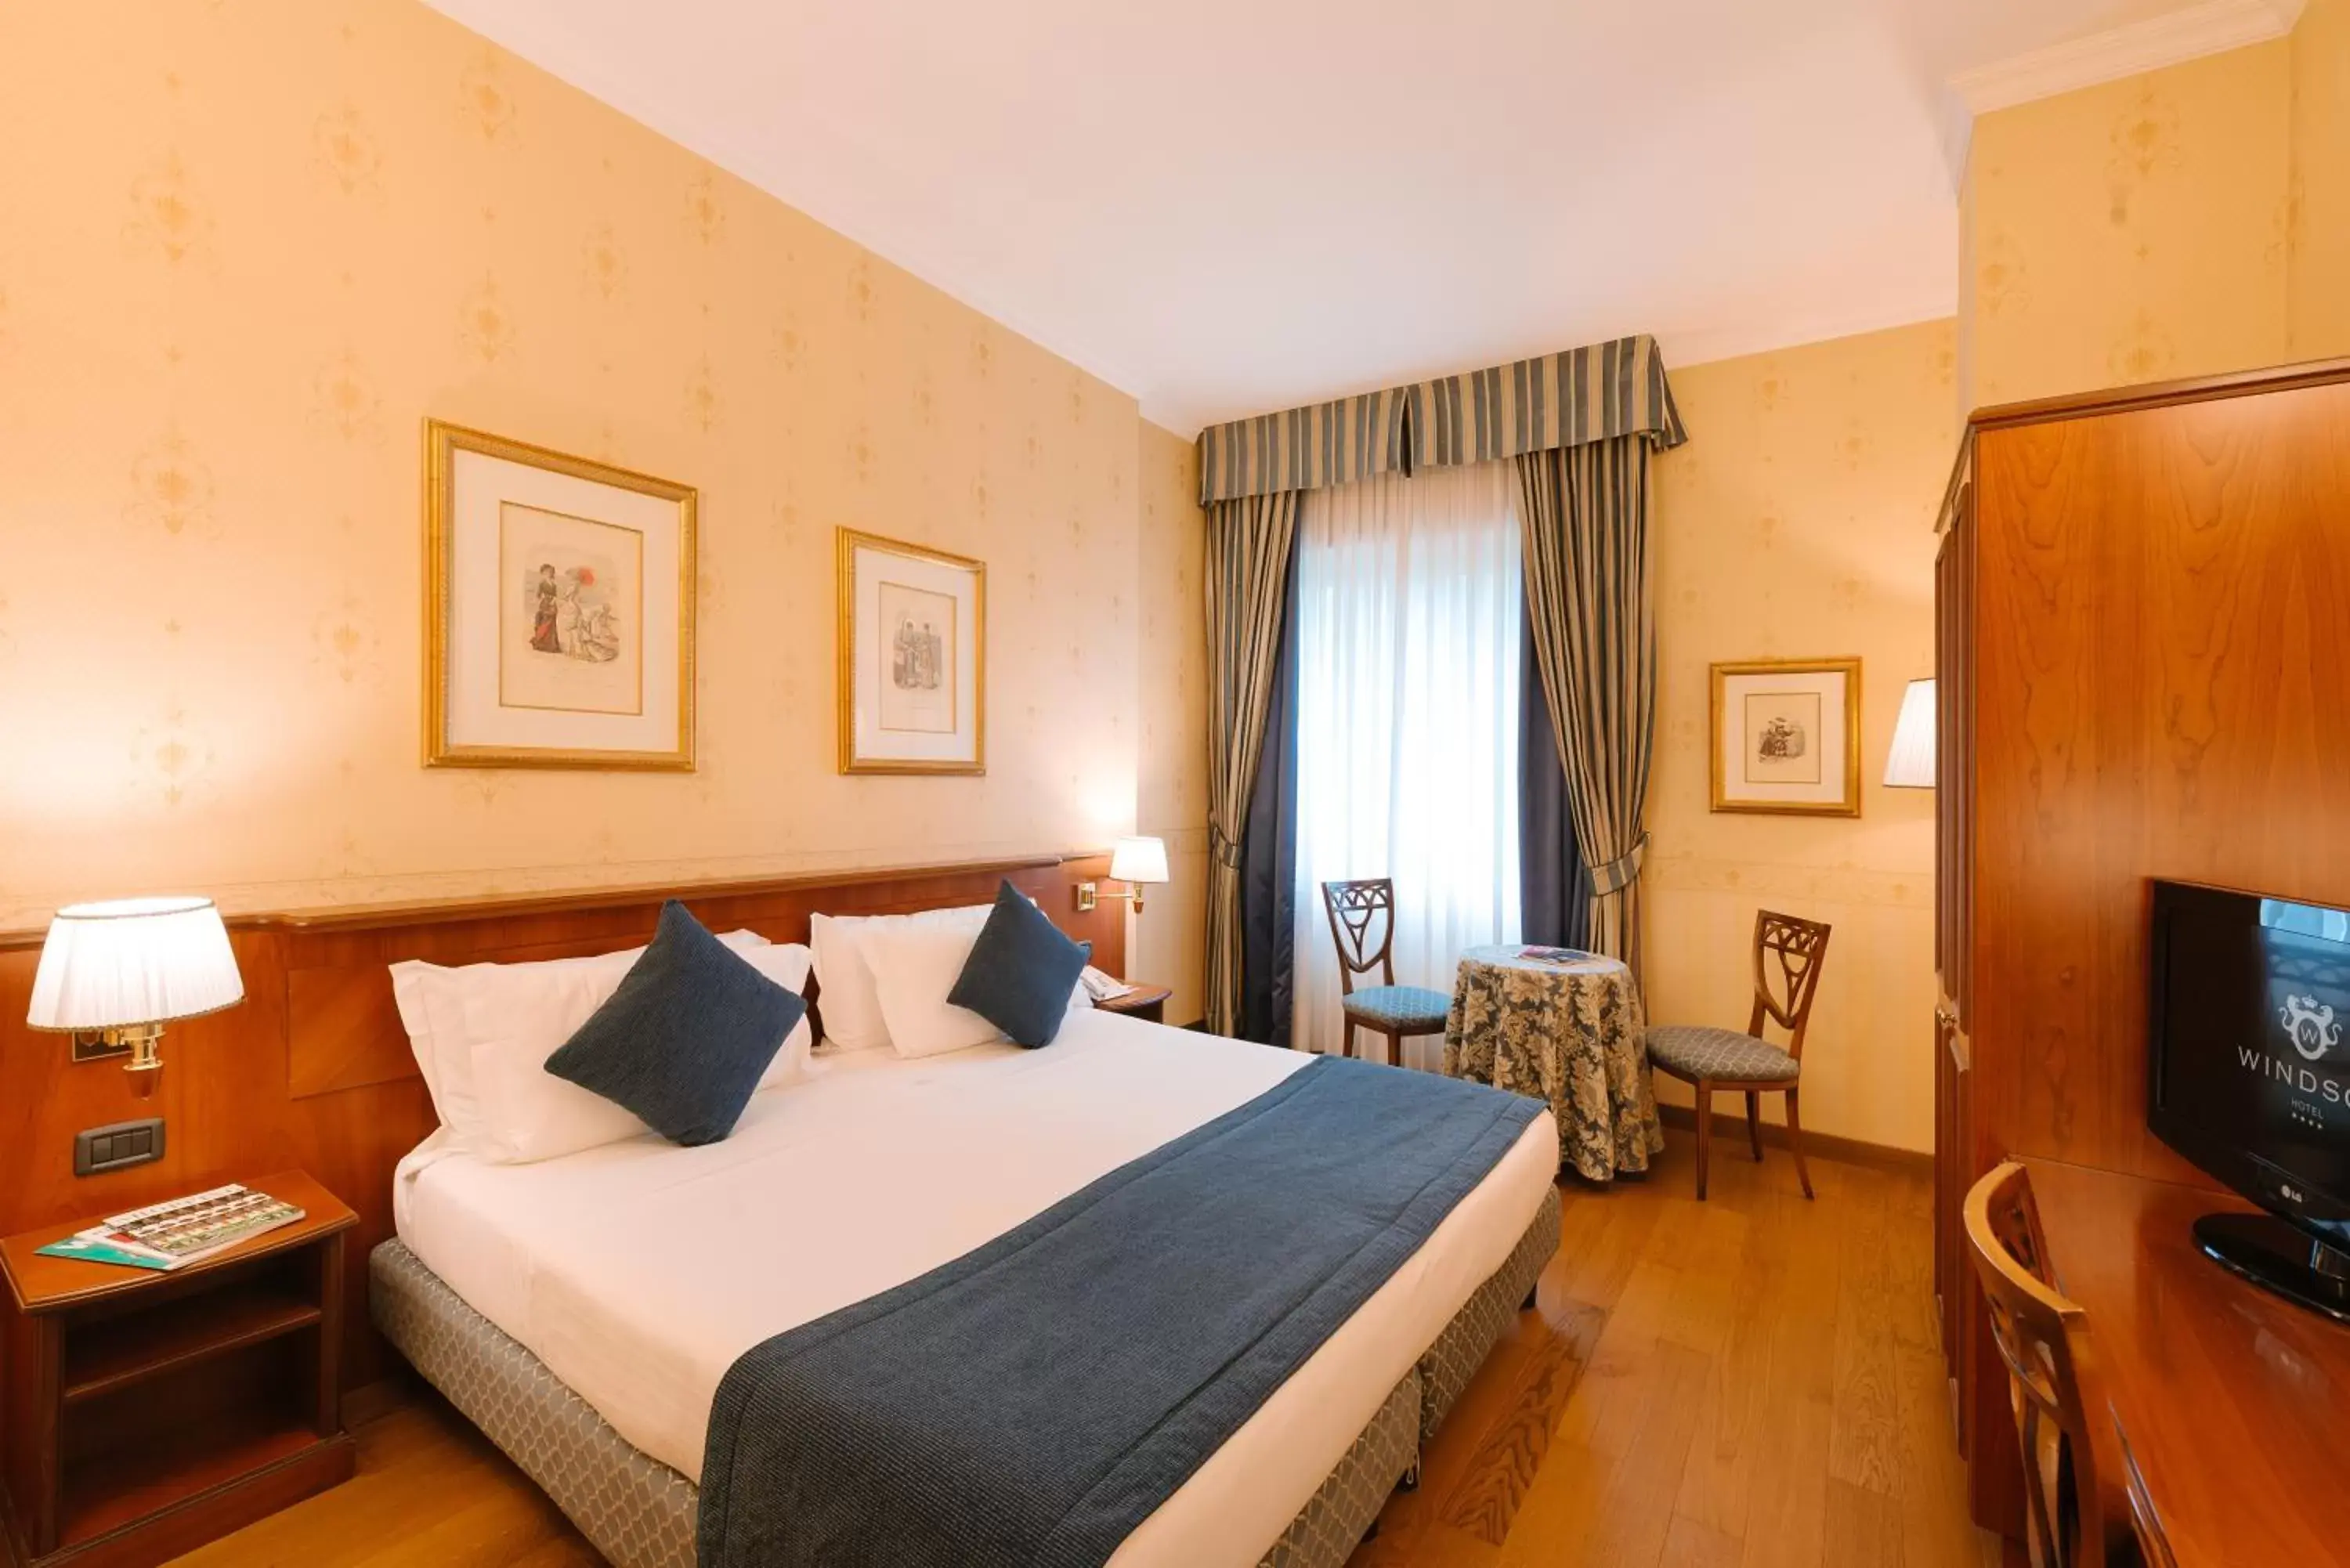 Bedroom, Room Photo in Windsor Hotel Milano